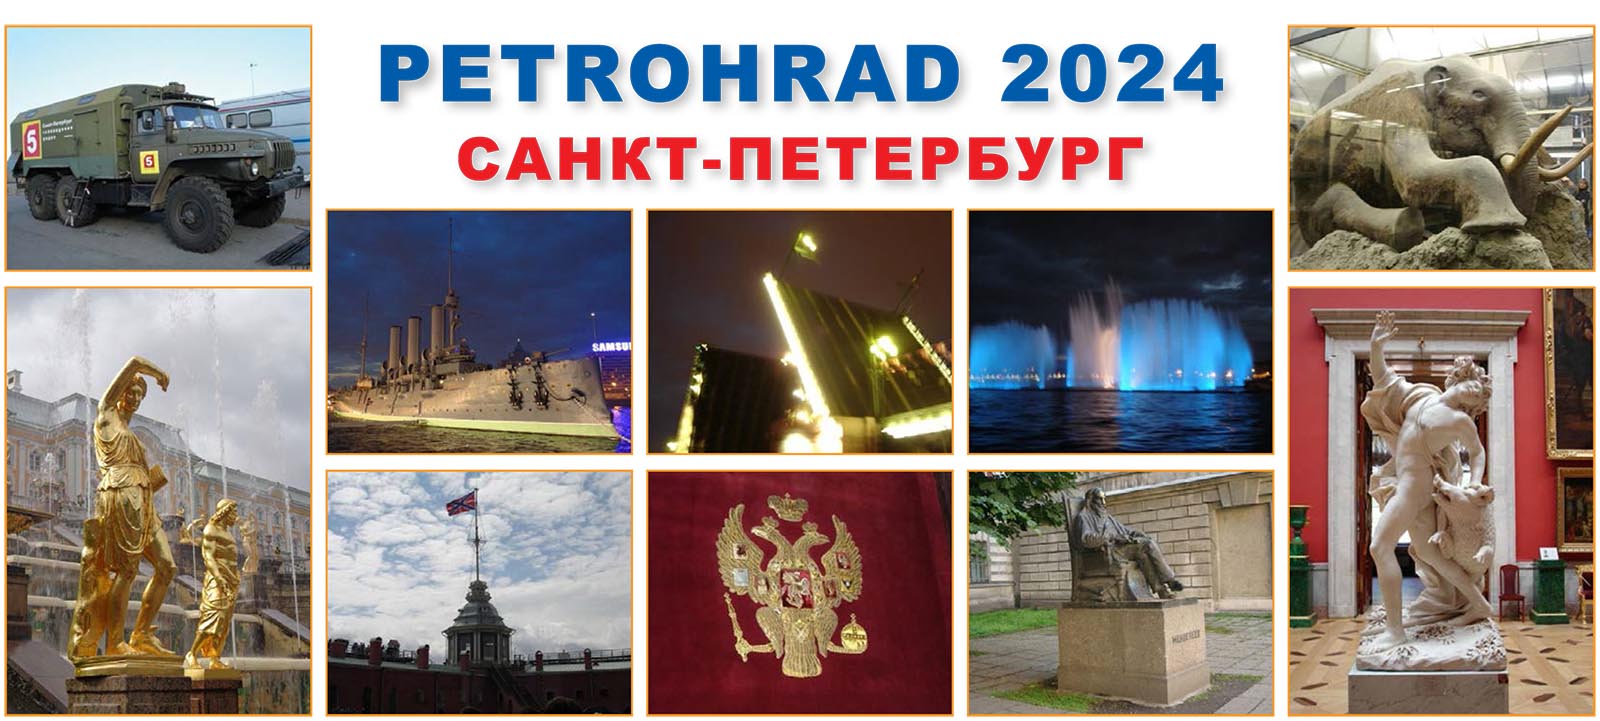 Petrohrad 2024